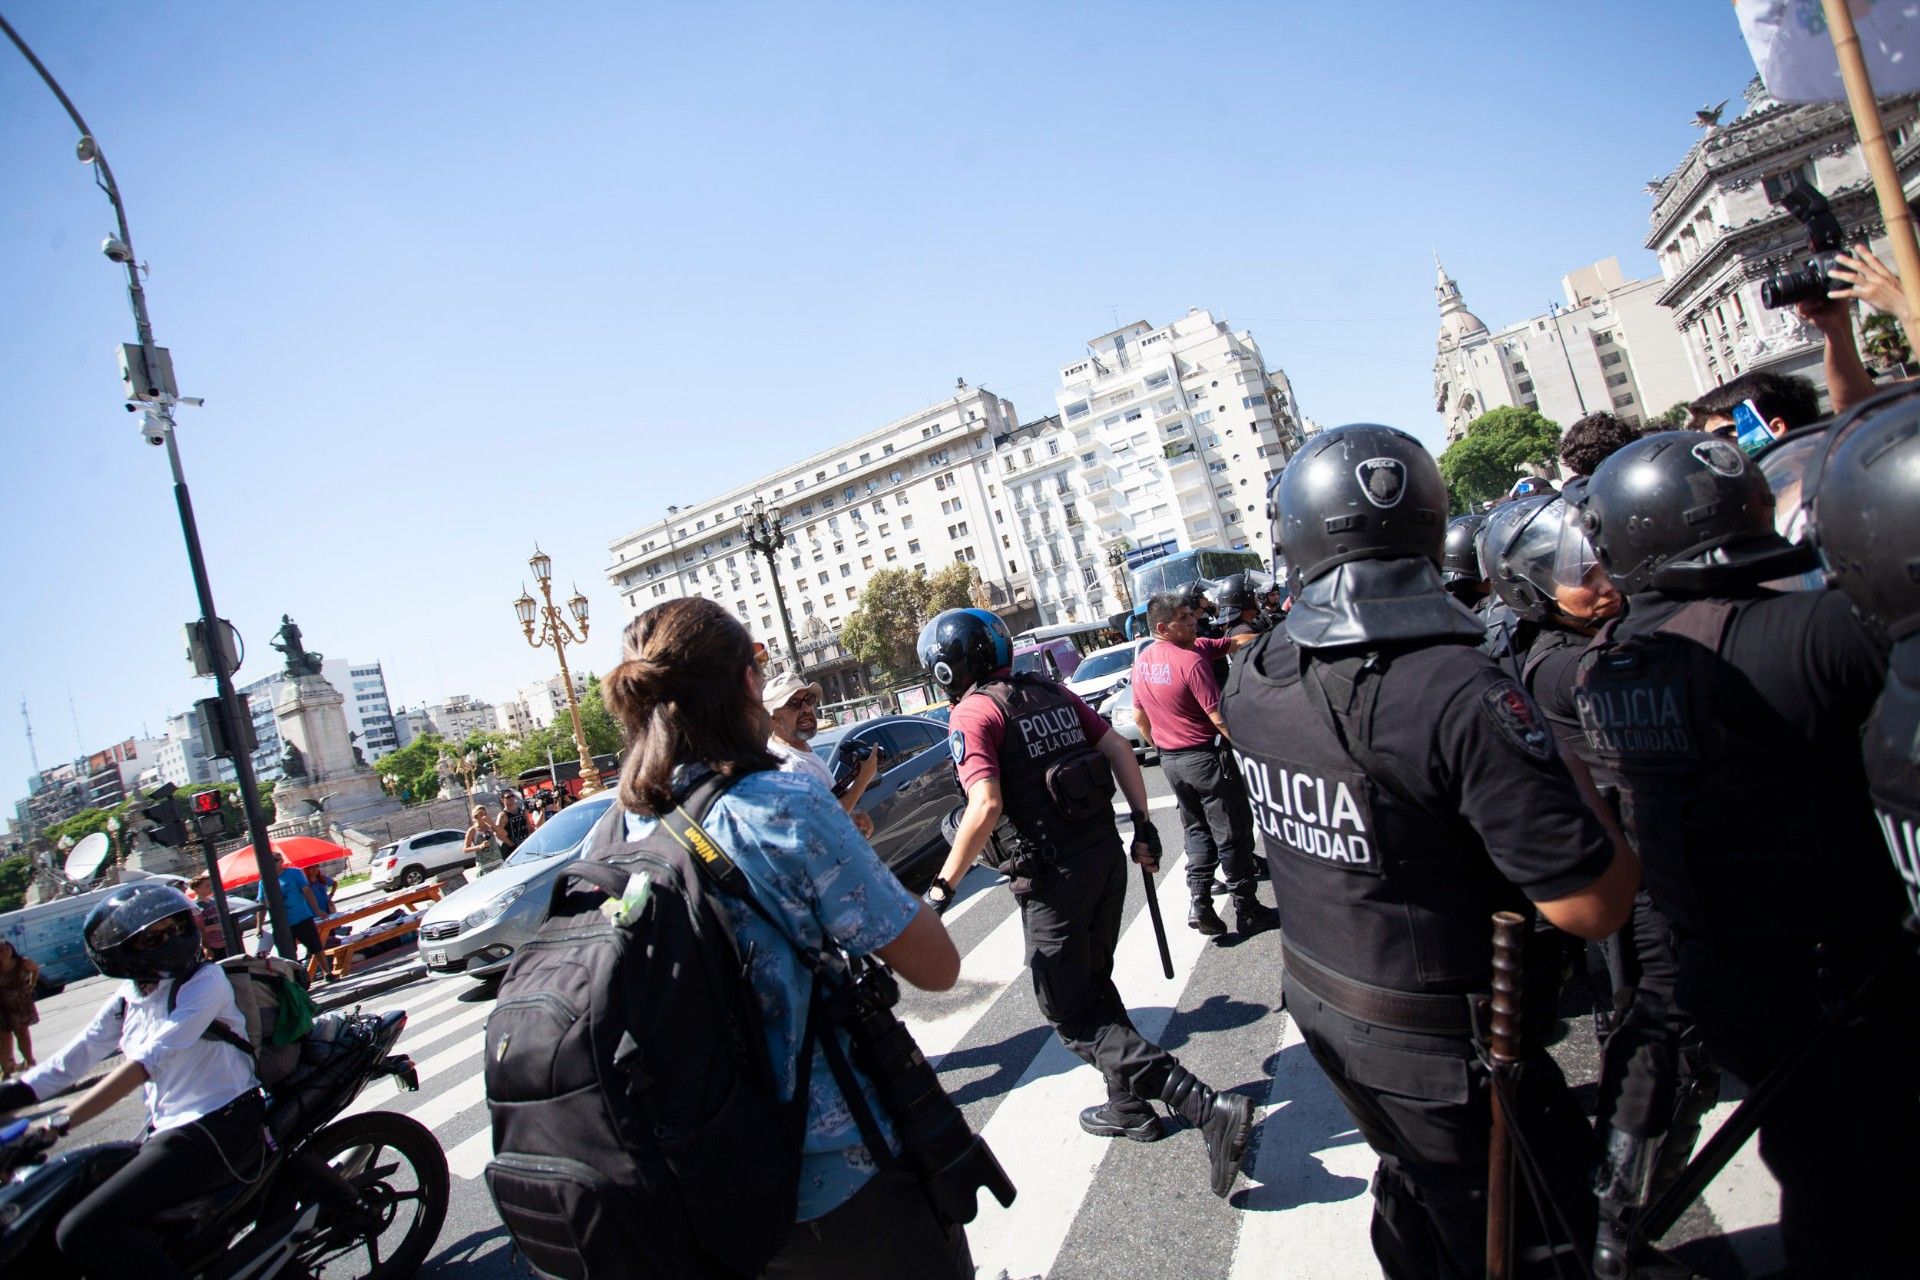 El policía increpa a Ávila por hacer su trabajo: sacar fotos.
Foto: Viojf